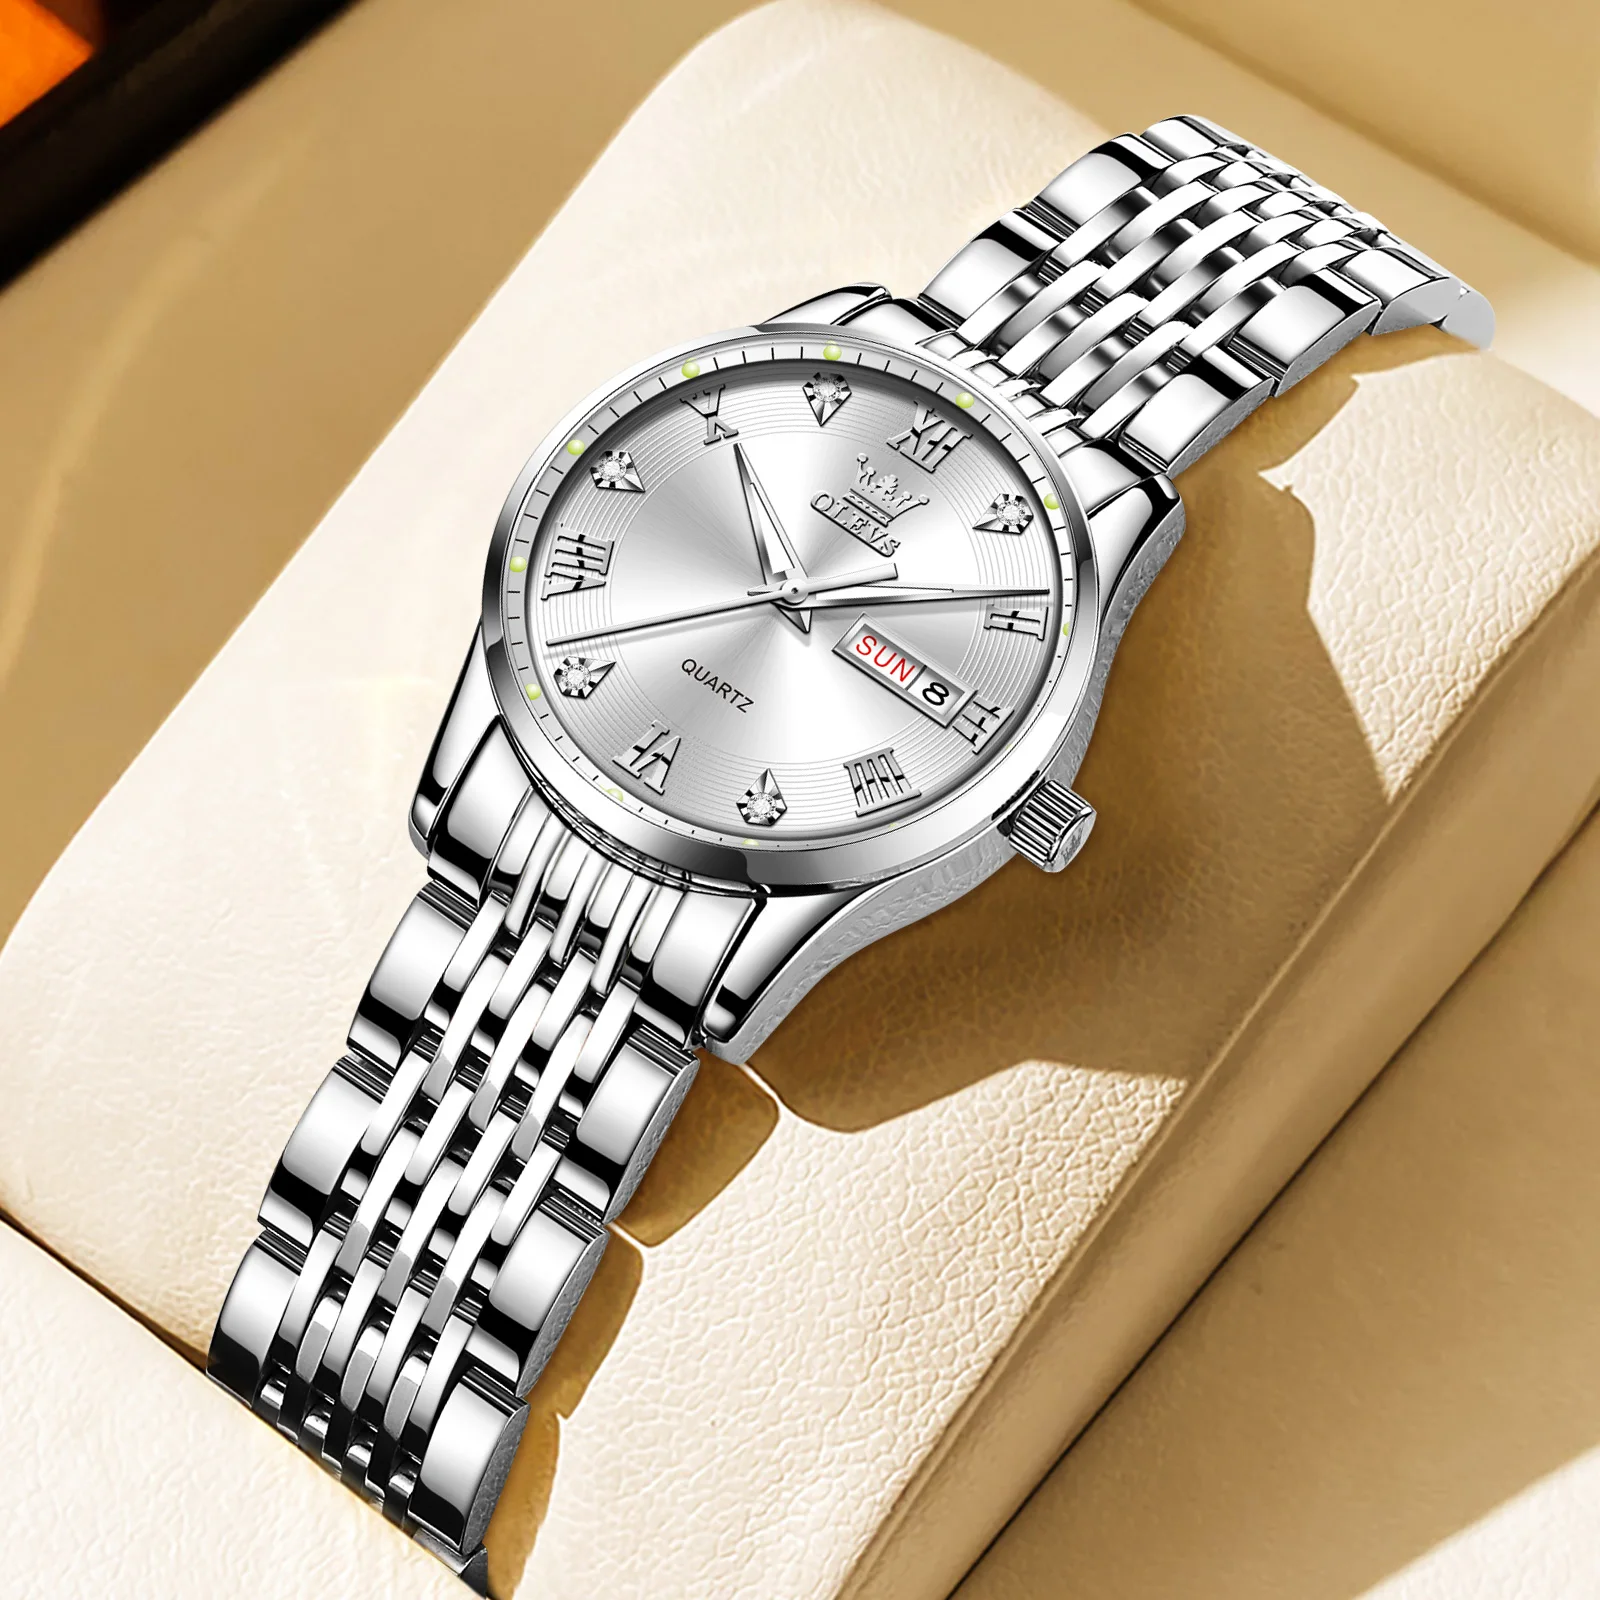 

OLEVS Luxury Fashion Women's Watch Stainless Steel Waterproof Original Quartz Watch for Women Top Brand Casual Lady Wrist Watch